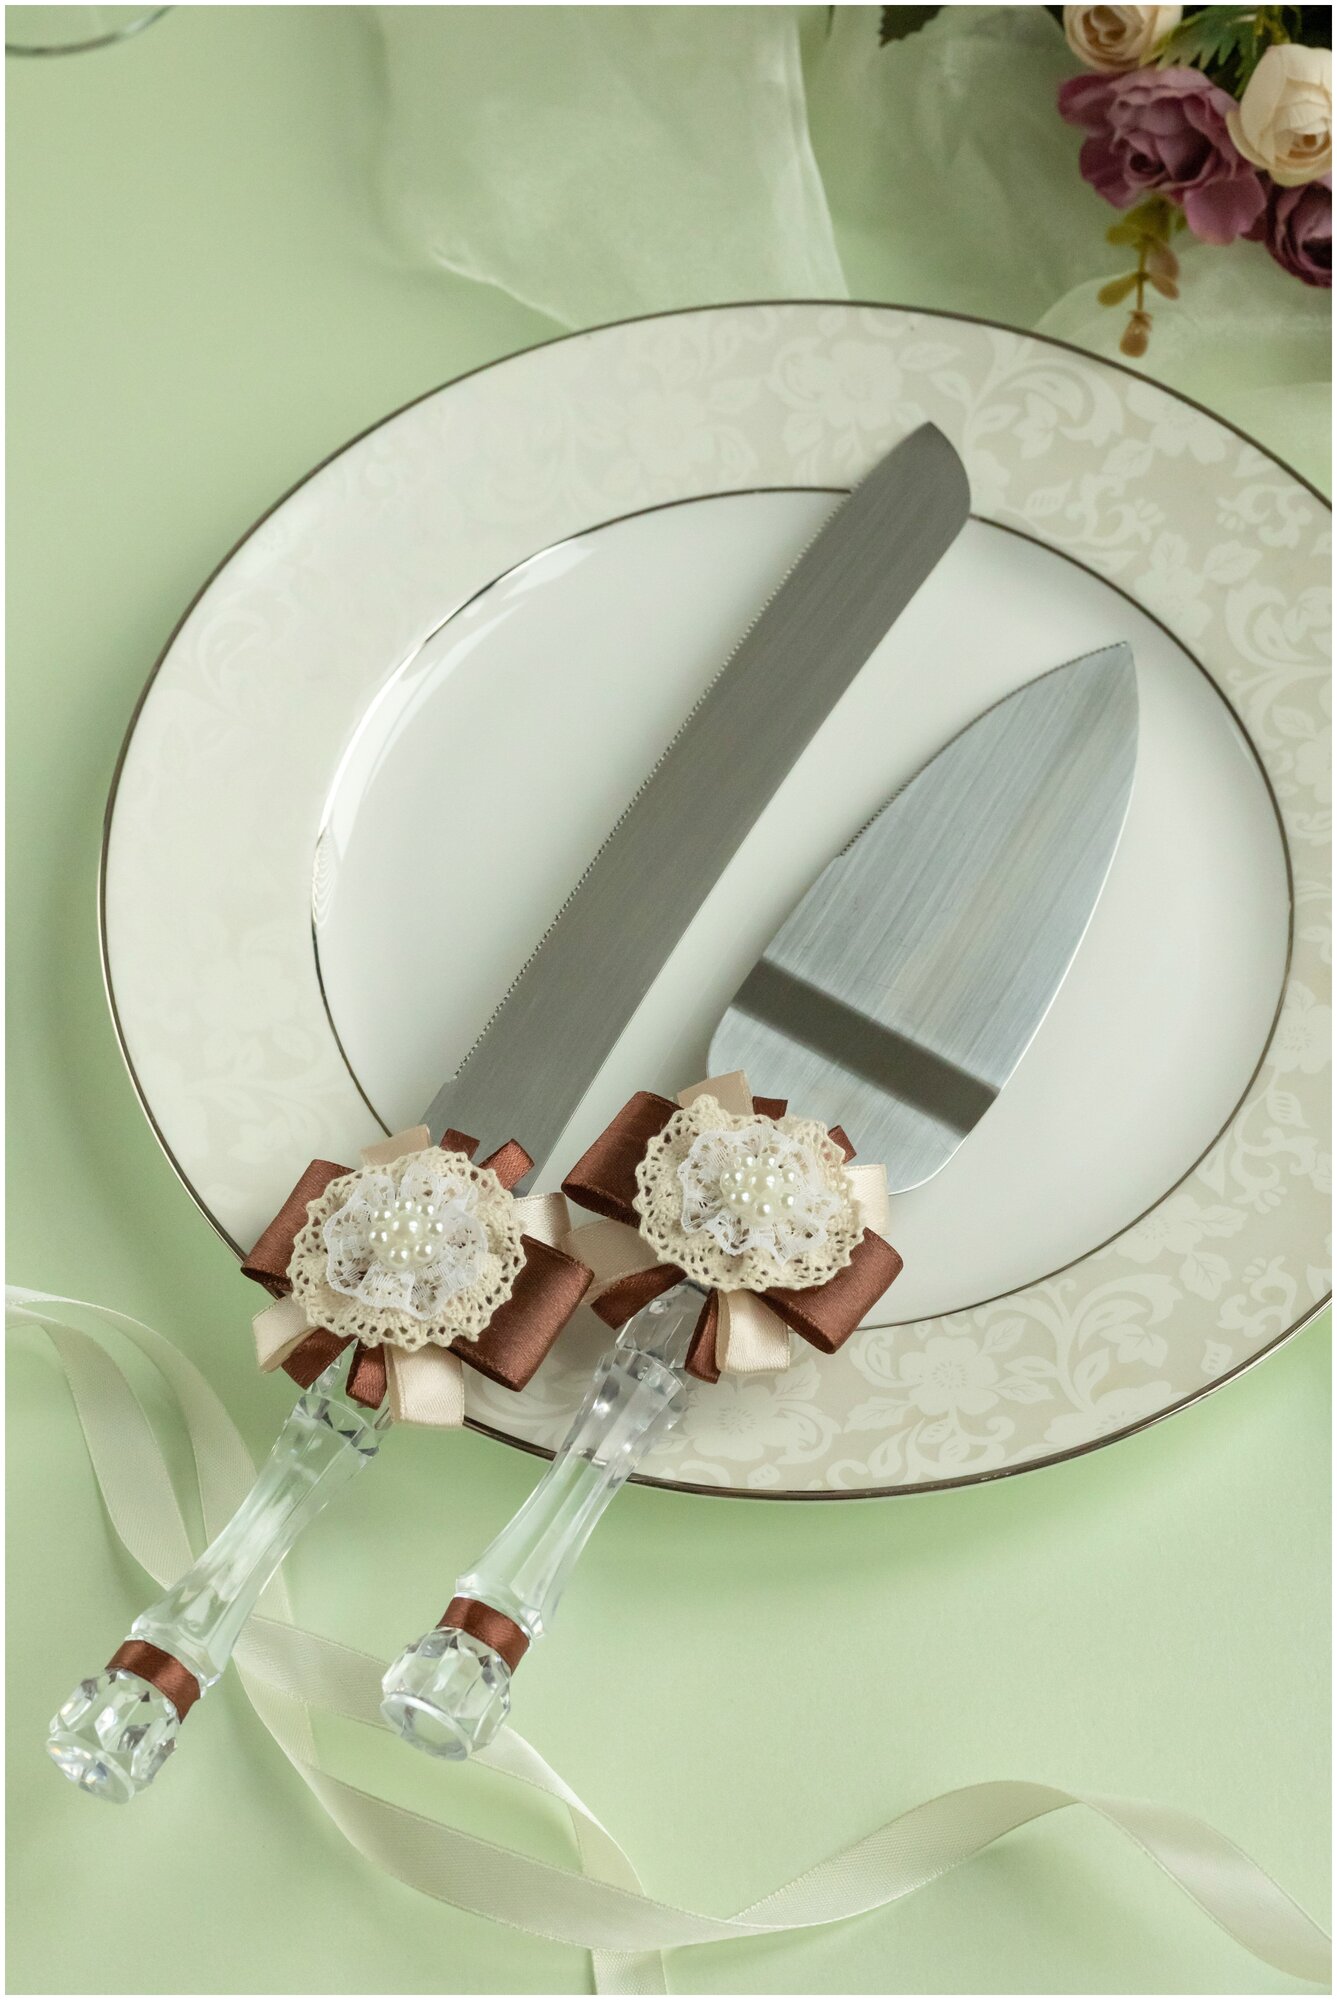 Приборы для свадебного торта "Винтаж" с декором из темного коричневого атласа, кремового кружева и жемчужных бусин (лопатка и нож)